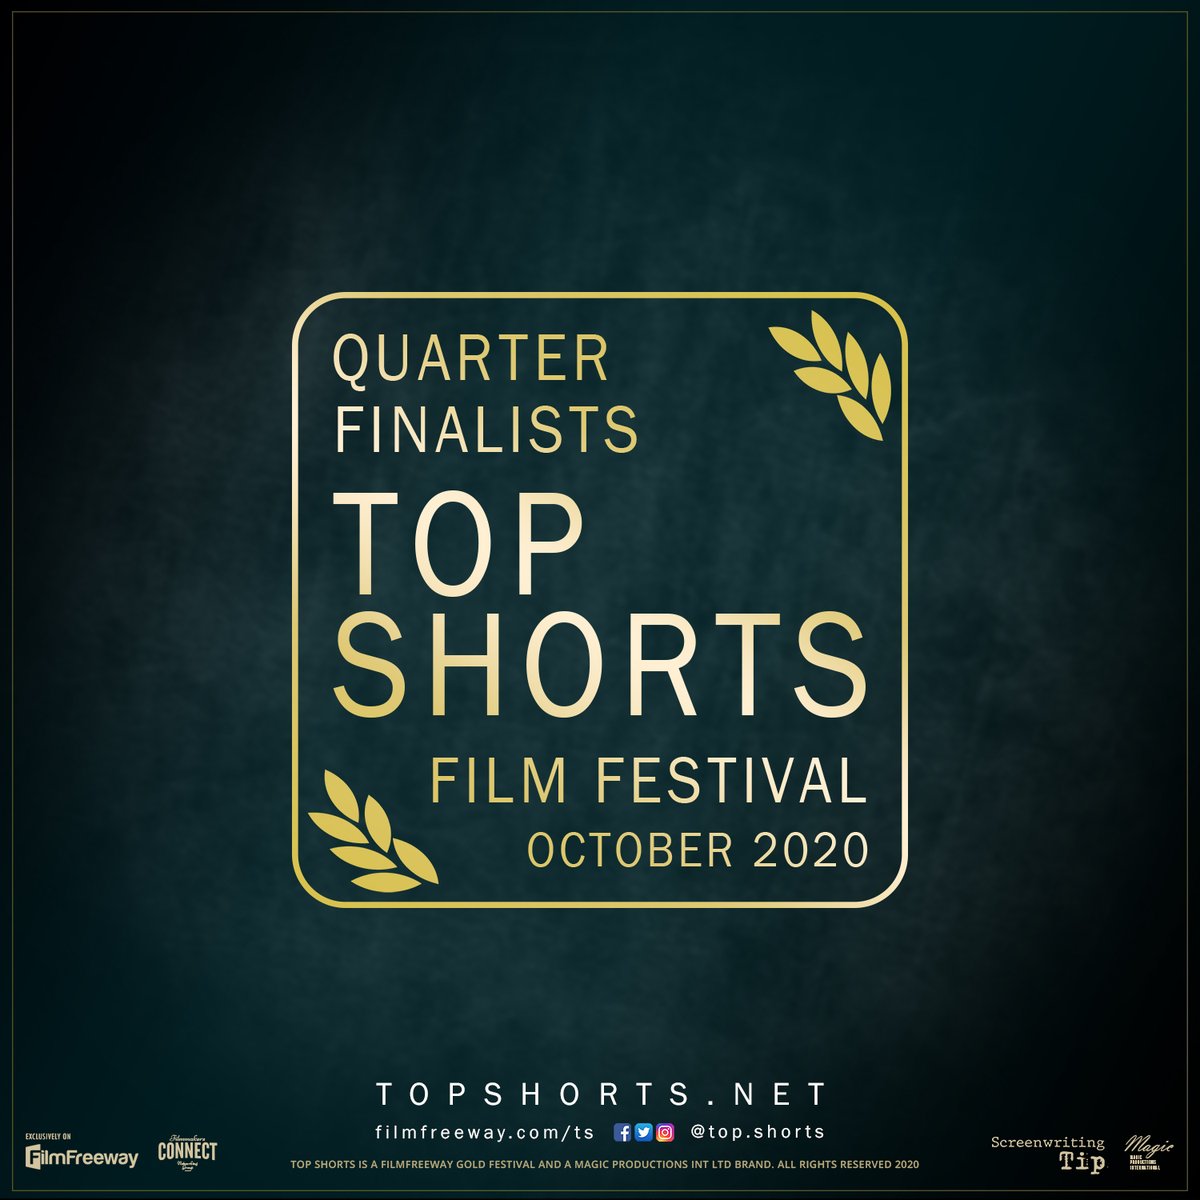 The Quarter-Finalists! filmfreeway.com/ts